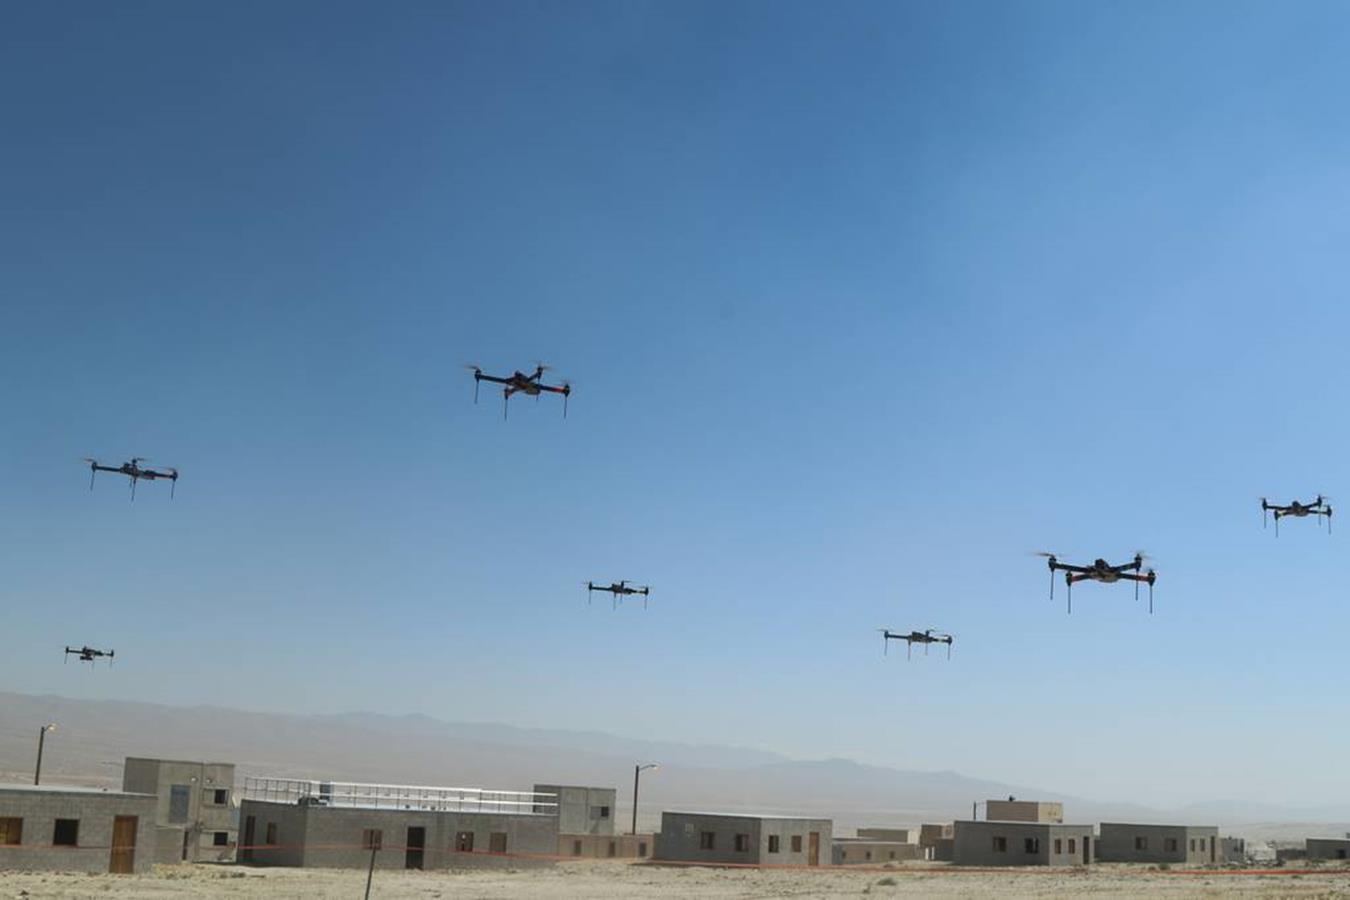 Armia USA sprawdzi bojowy rój dronów. Ma być tani oraz rozpoznawać i atakować cele z poziomu jednego kontrolera